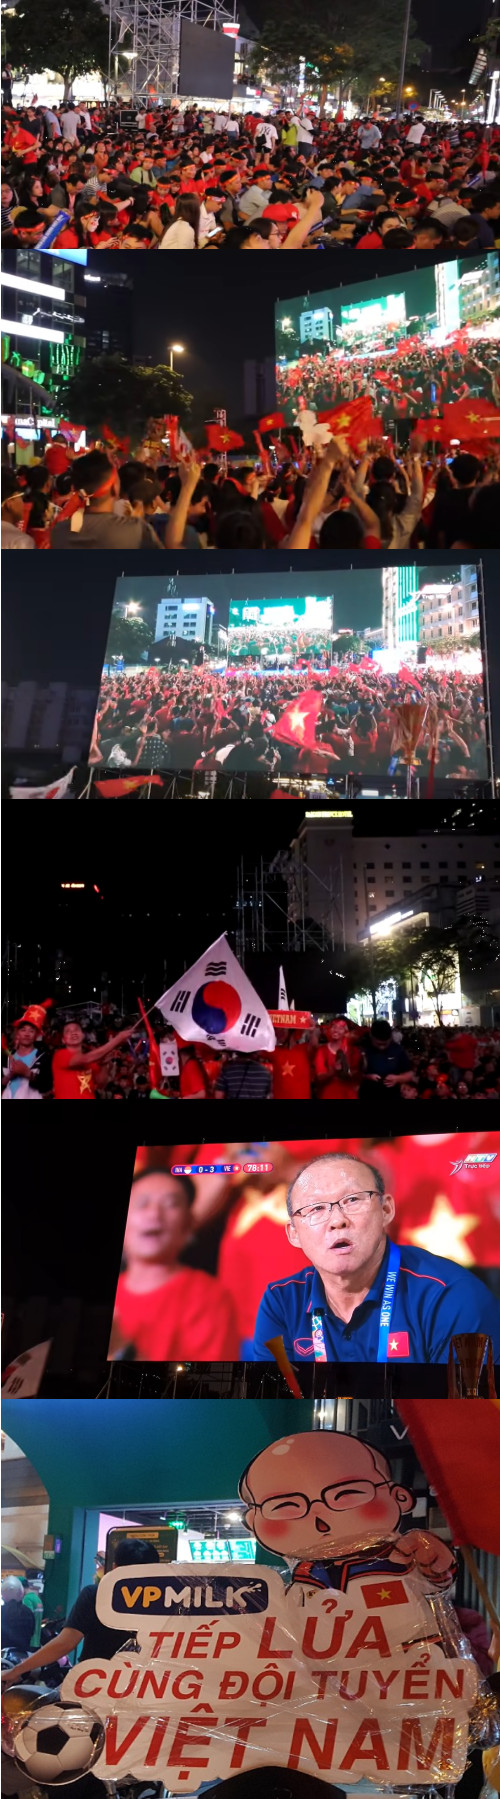 호치민 시내 광장에서 응원하는 모습 – 출처 : 통신원 촬영